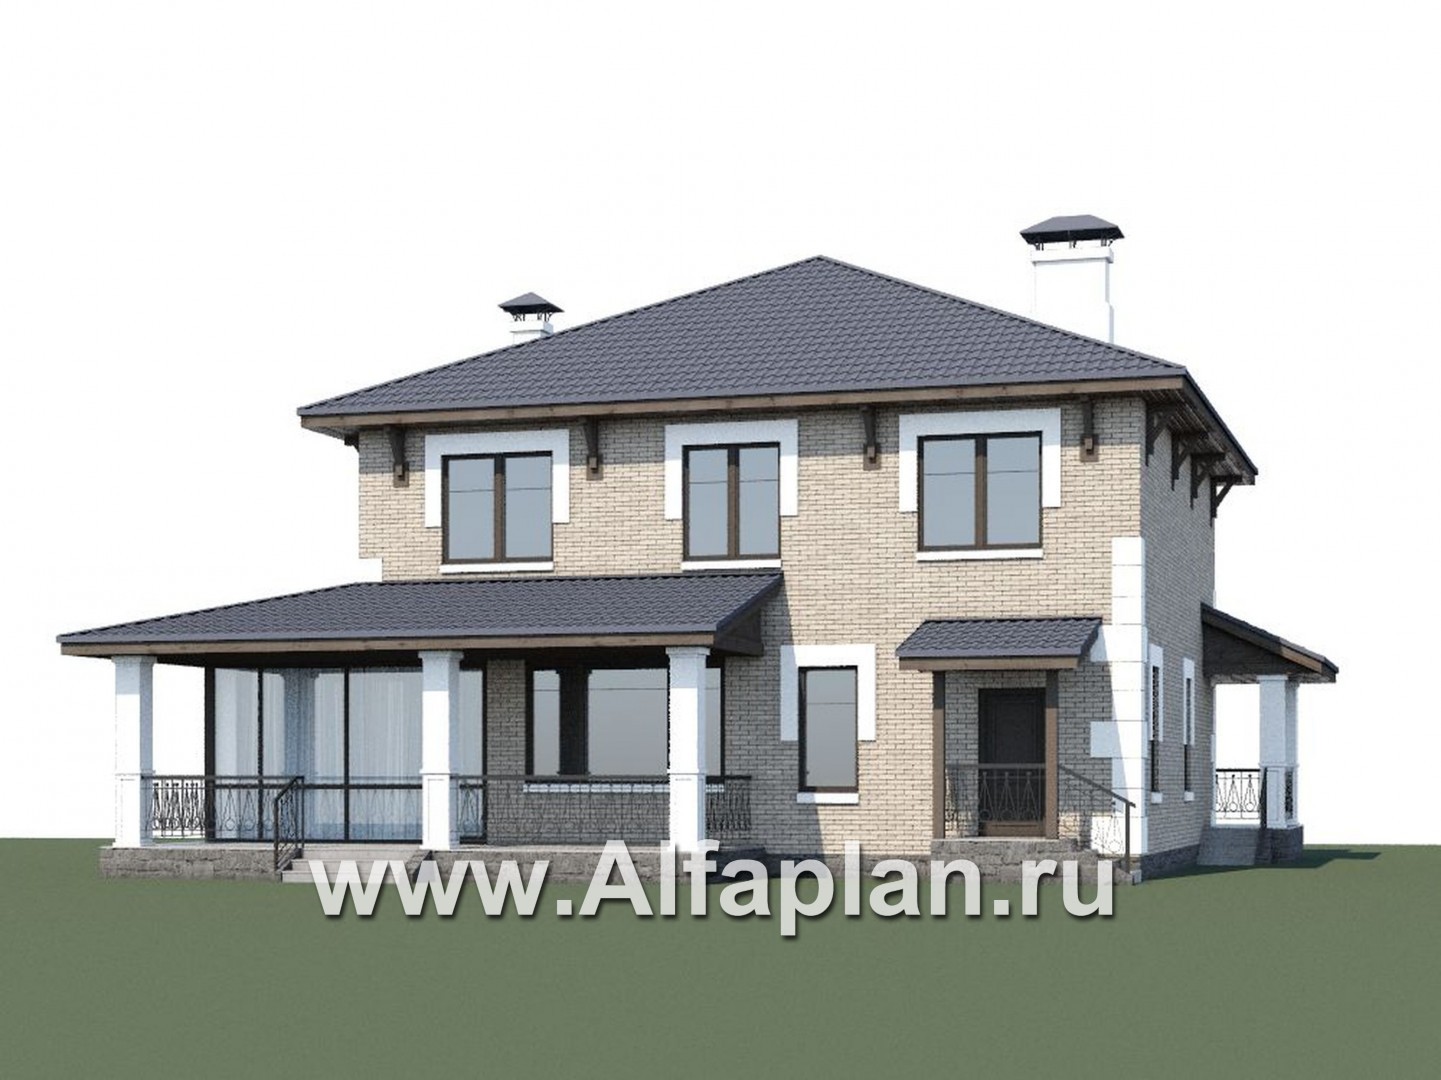 «Земляничная поляна» - проект двухэтажного дома, с большой верандой, мастер спальня - дизайн дома №1